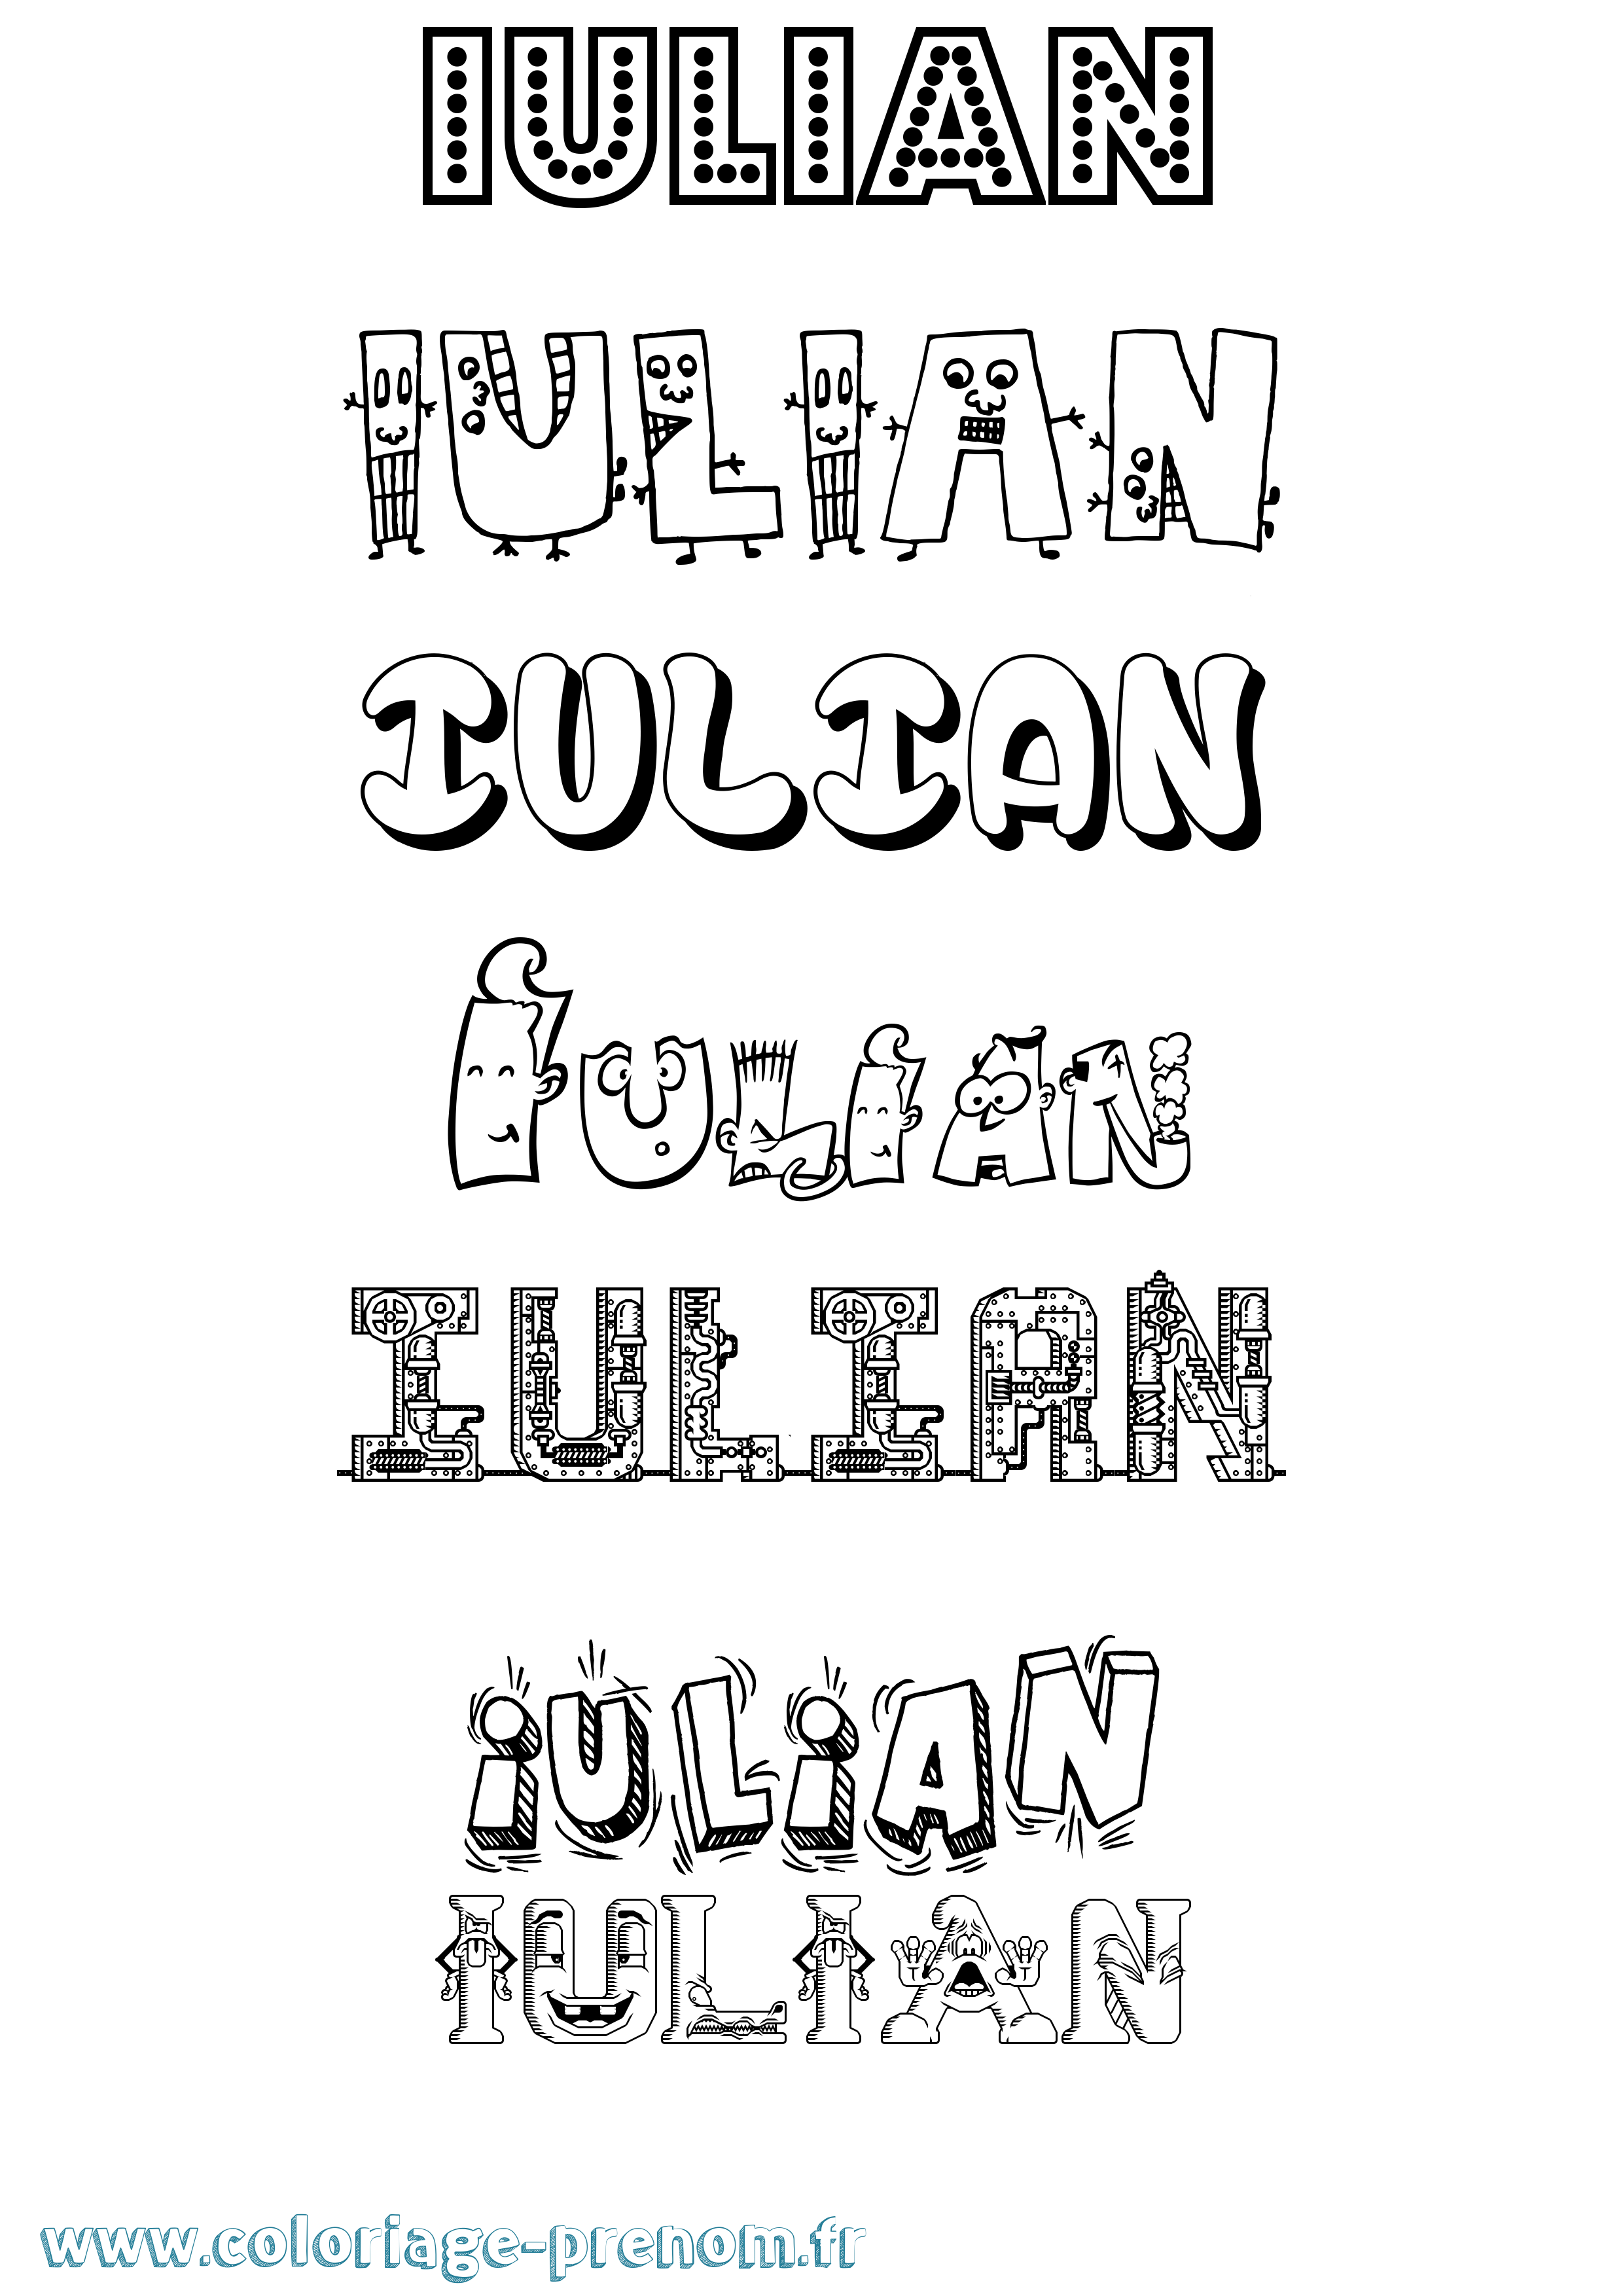 Coloriage prénom Iulian Fun